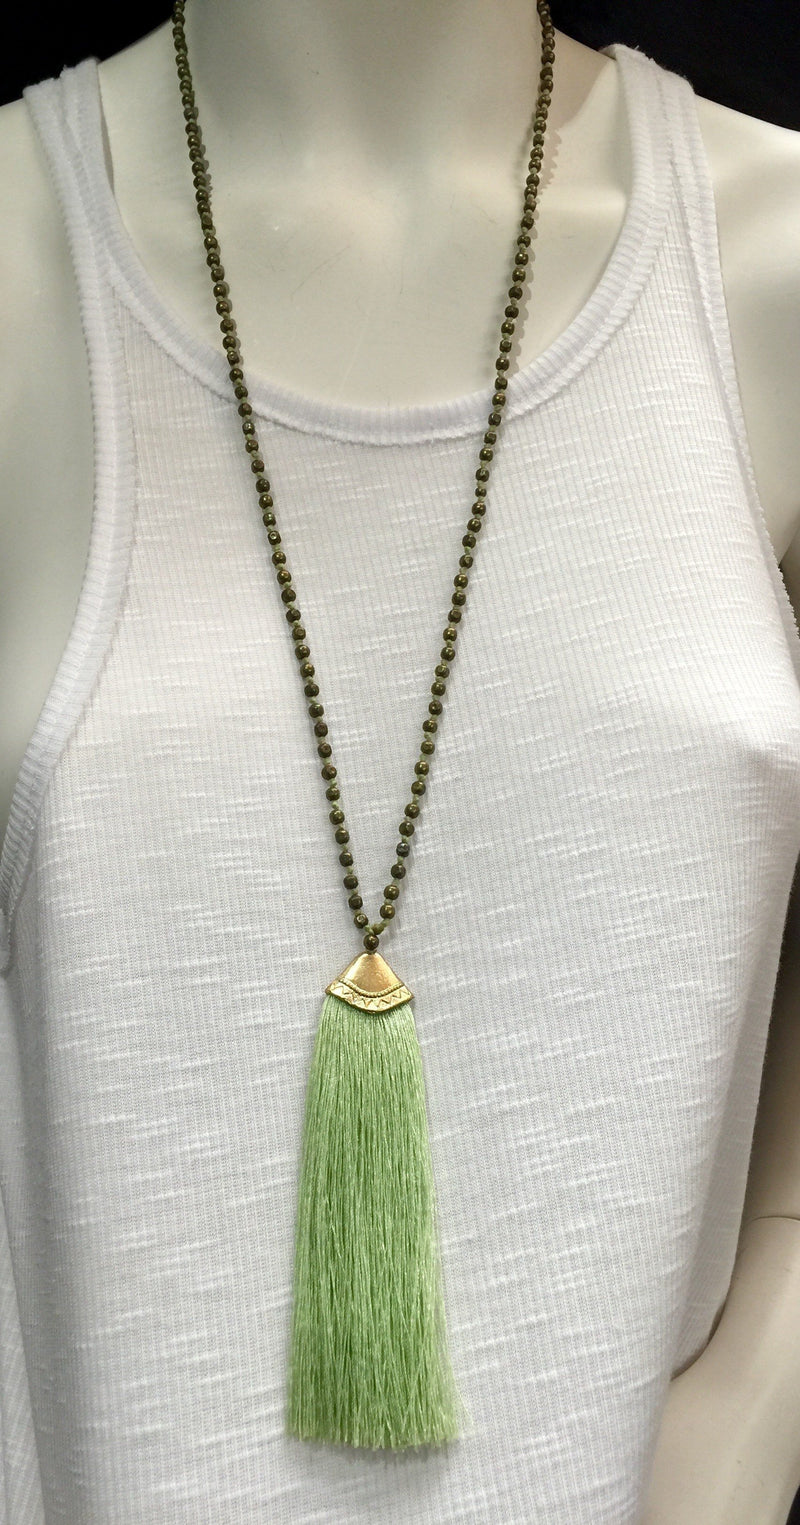 Brass Beads Tassel Necklace - Mint Green 